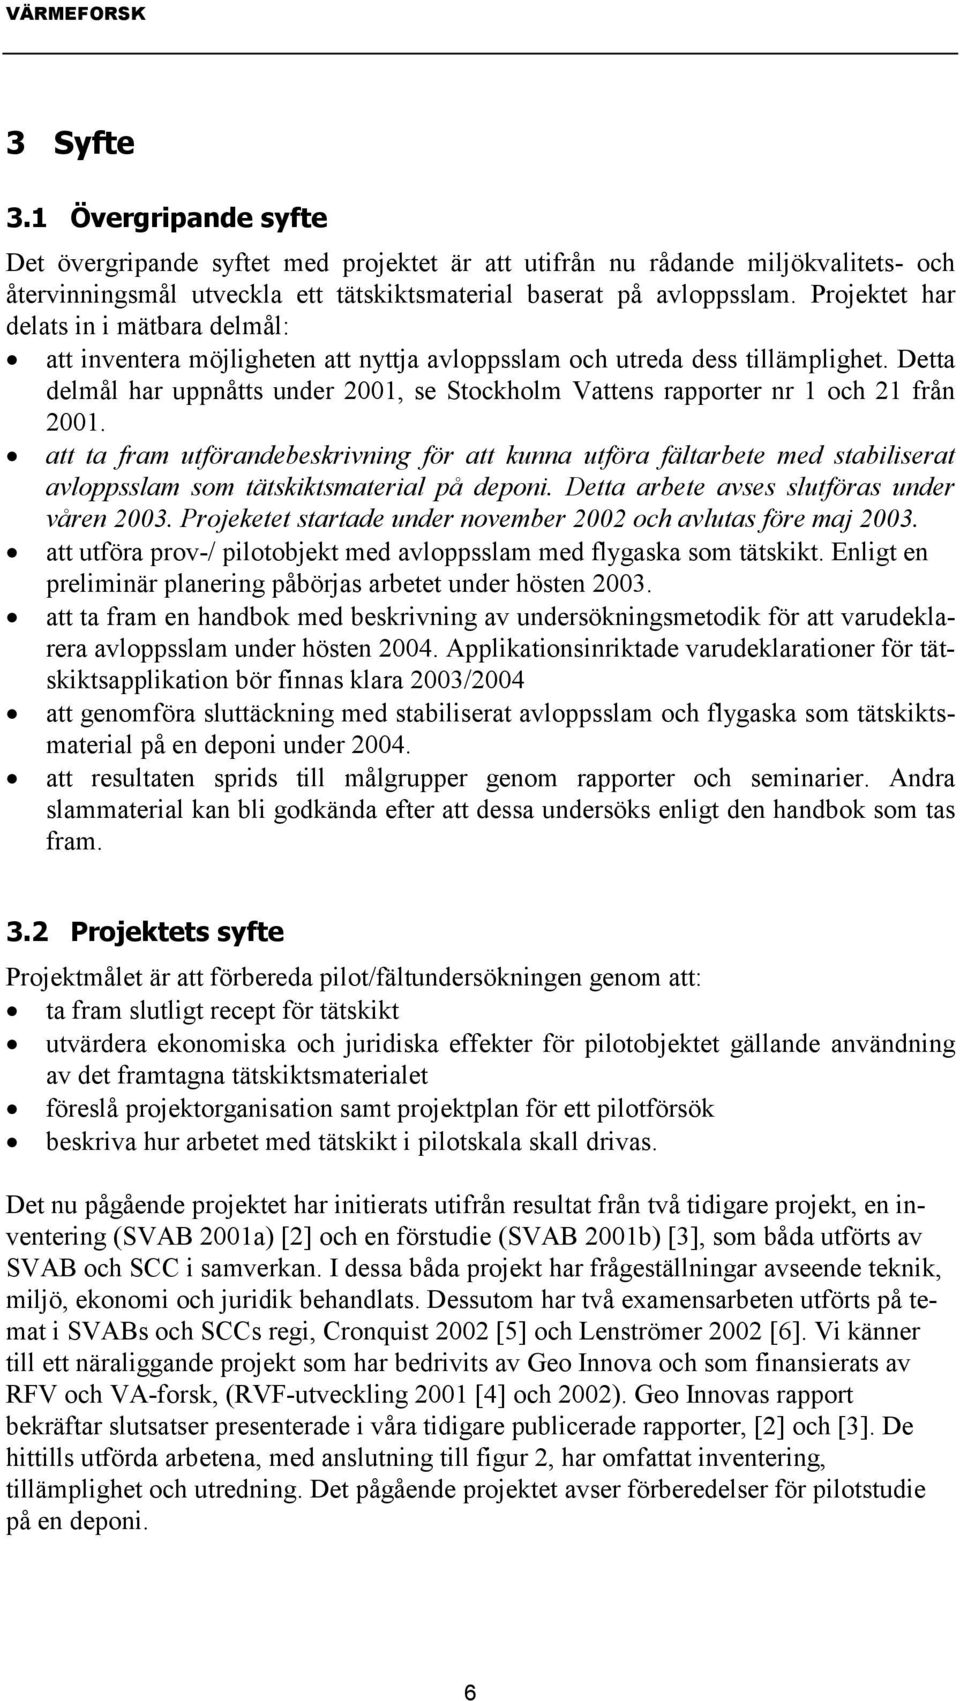 Detta delmål har uppnåtts under 2001, se Stockholm Vattens rapporter nr 1 och 21 från 2001.